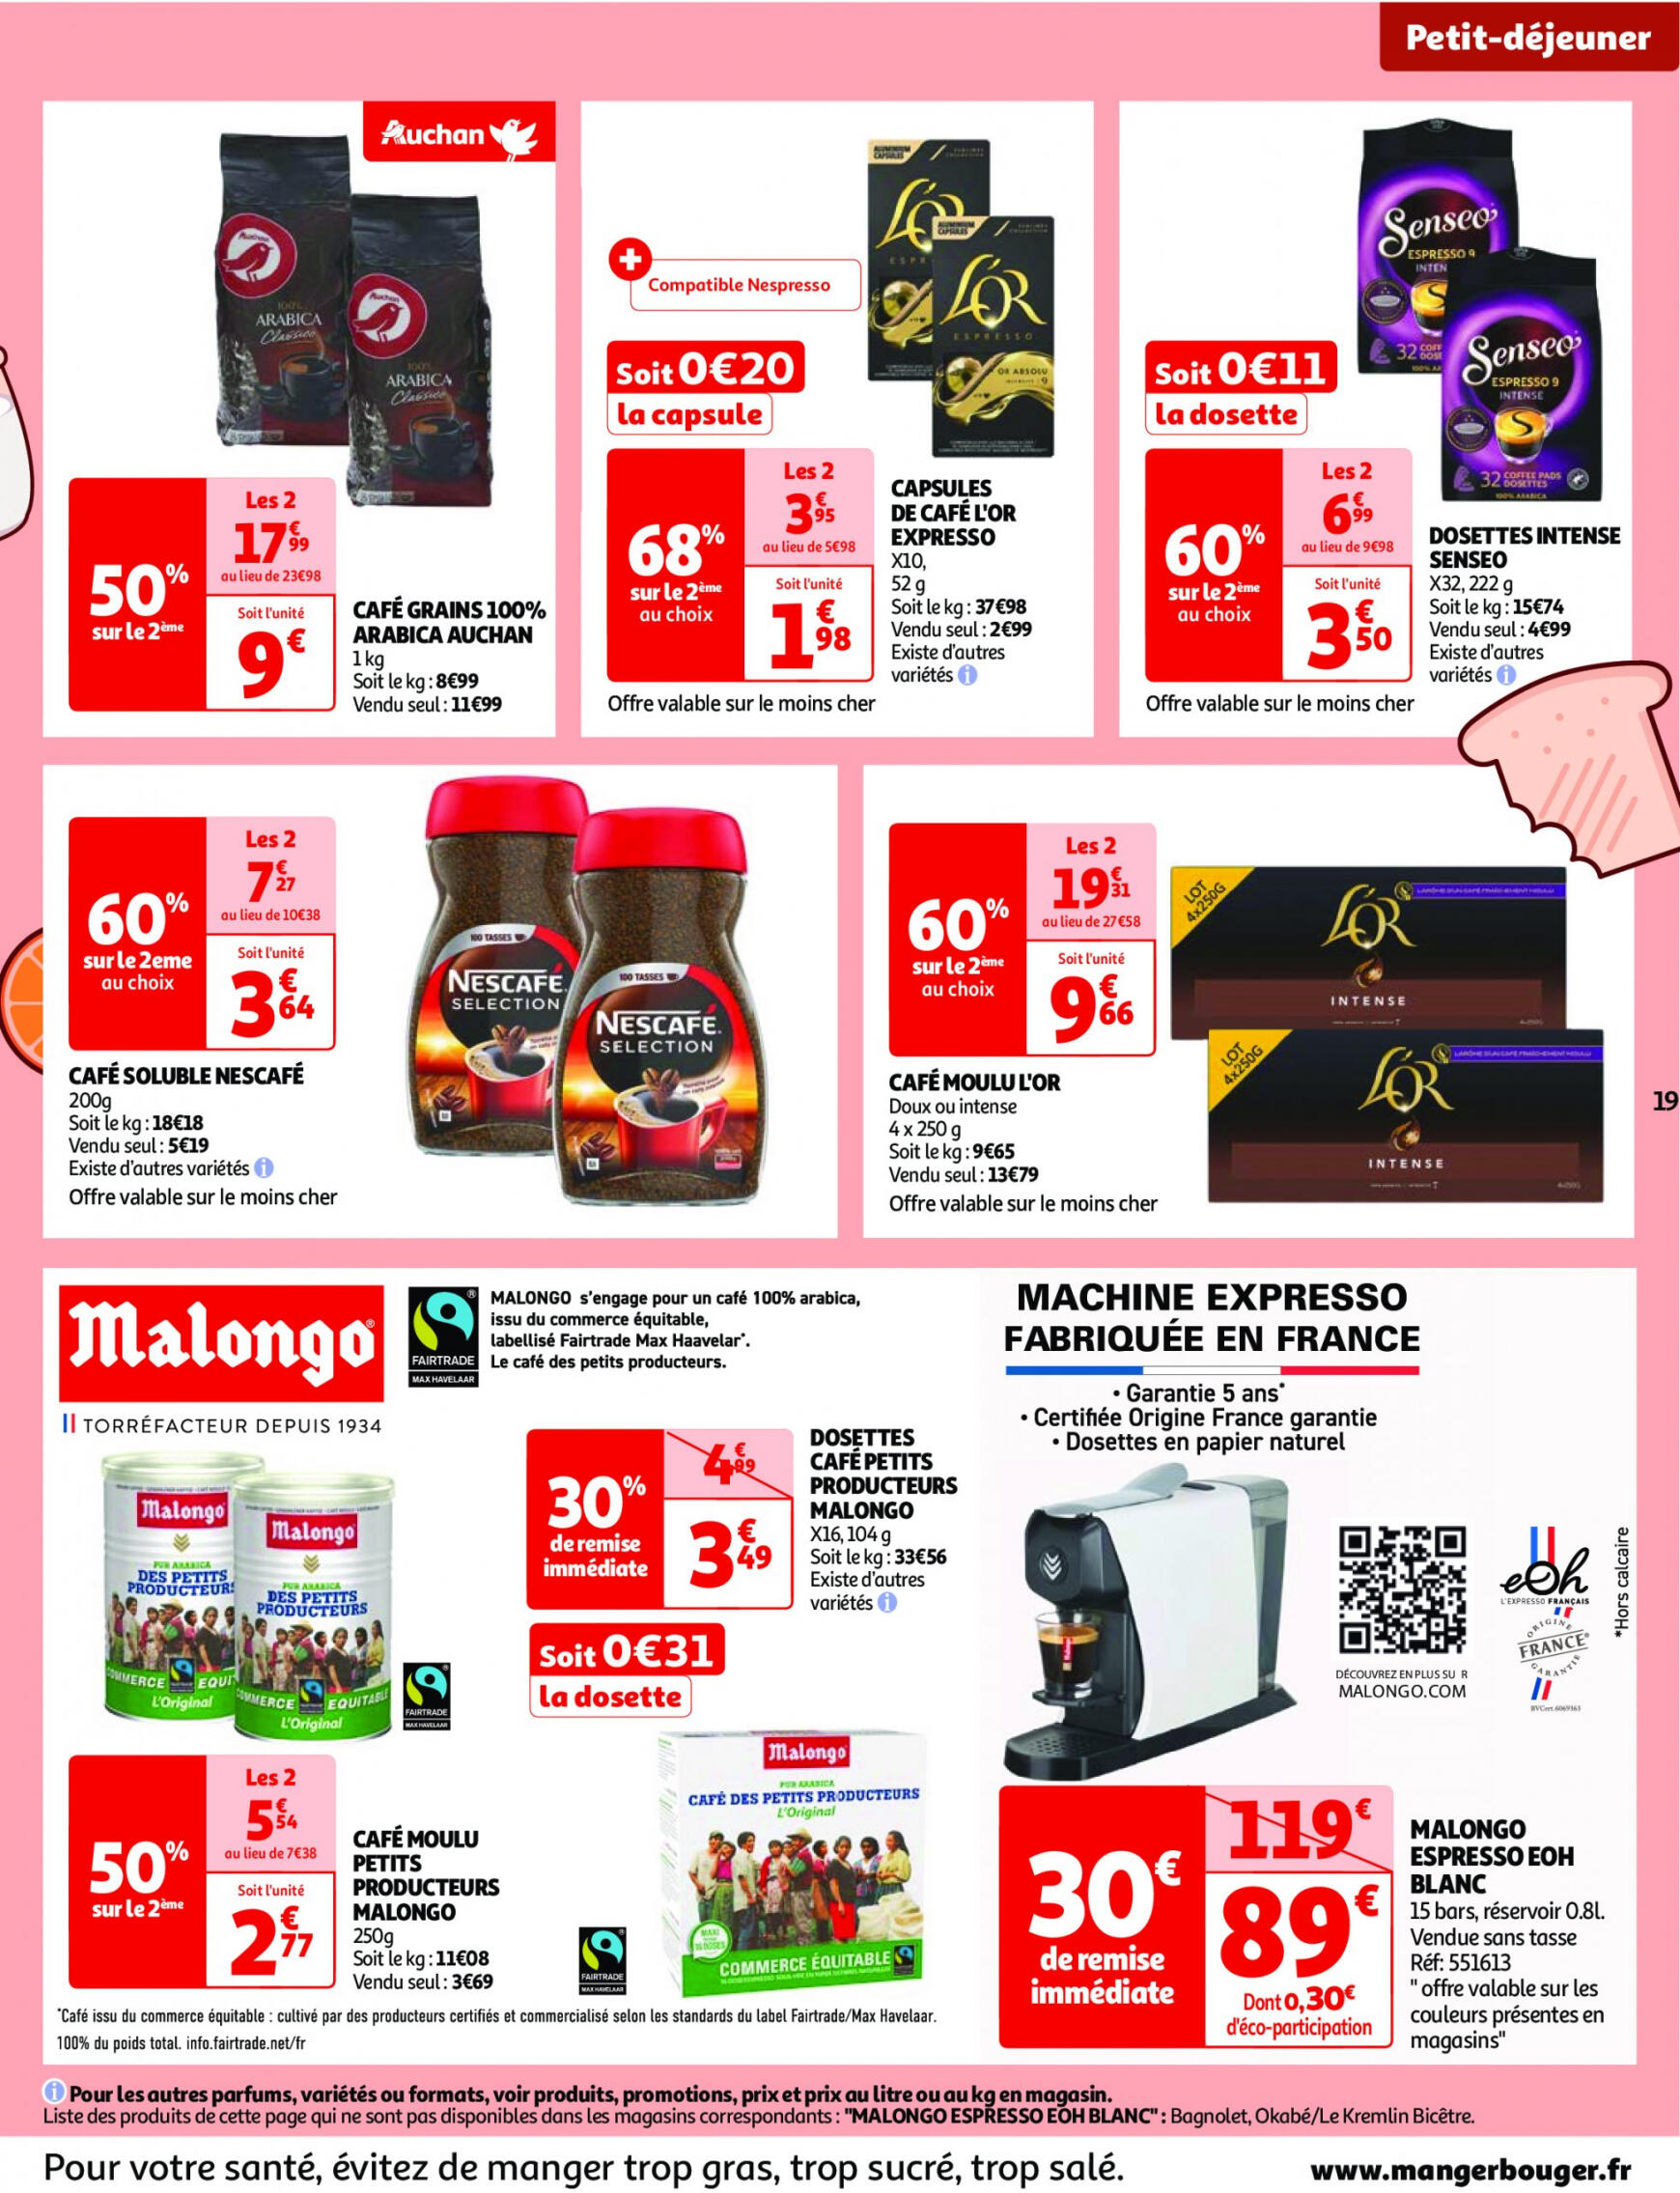 auchan - Prospectus Auchan actuel 14.05. - 21.05. - page: 19